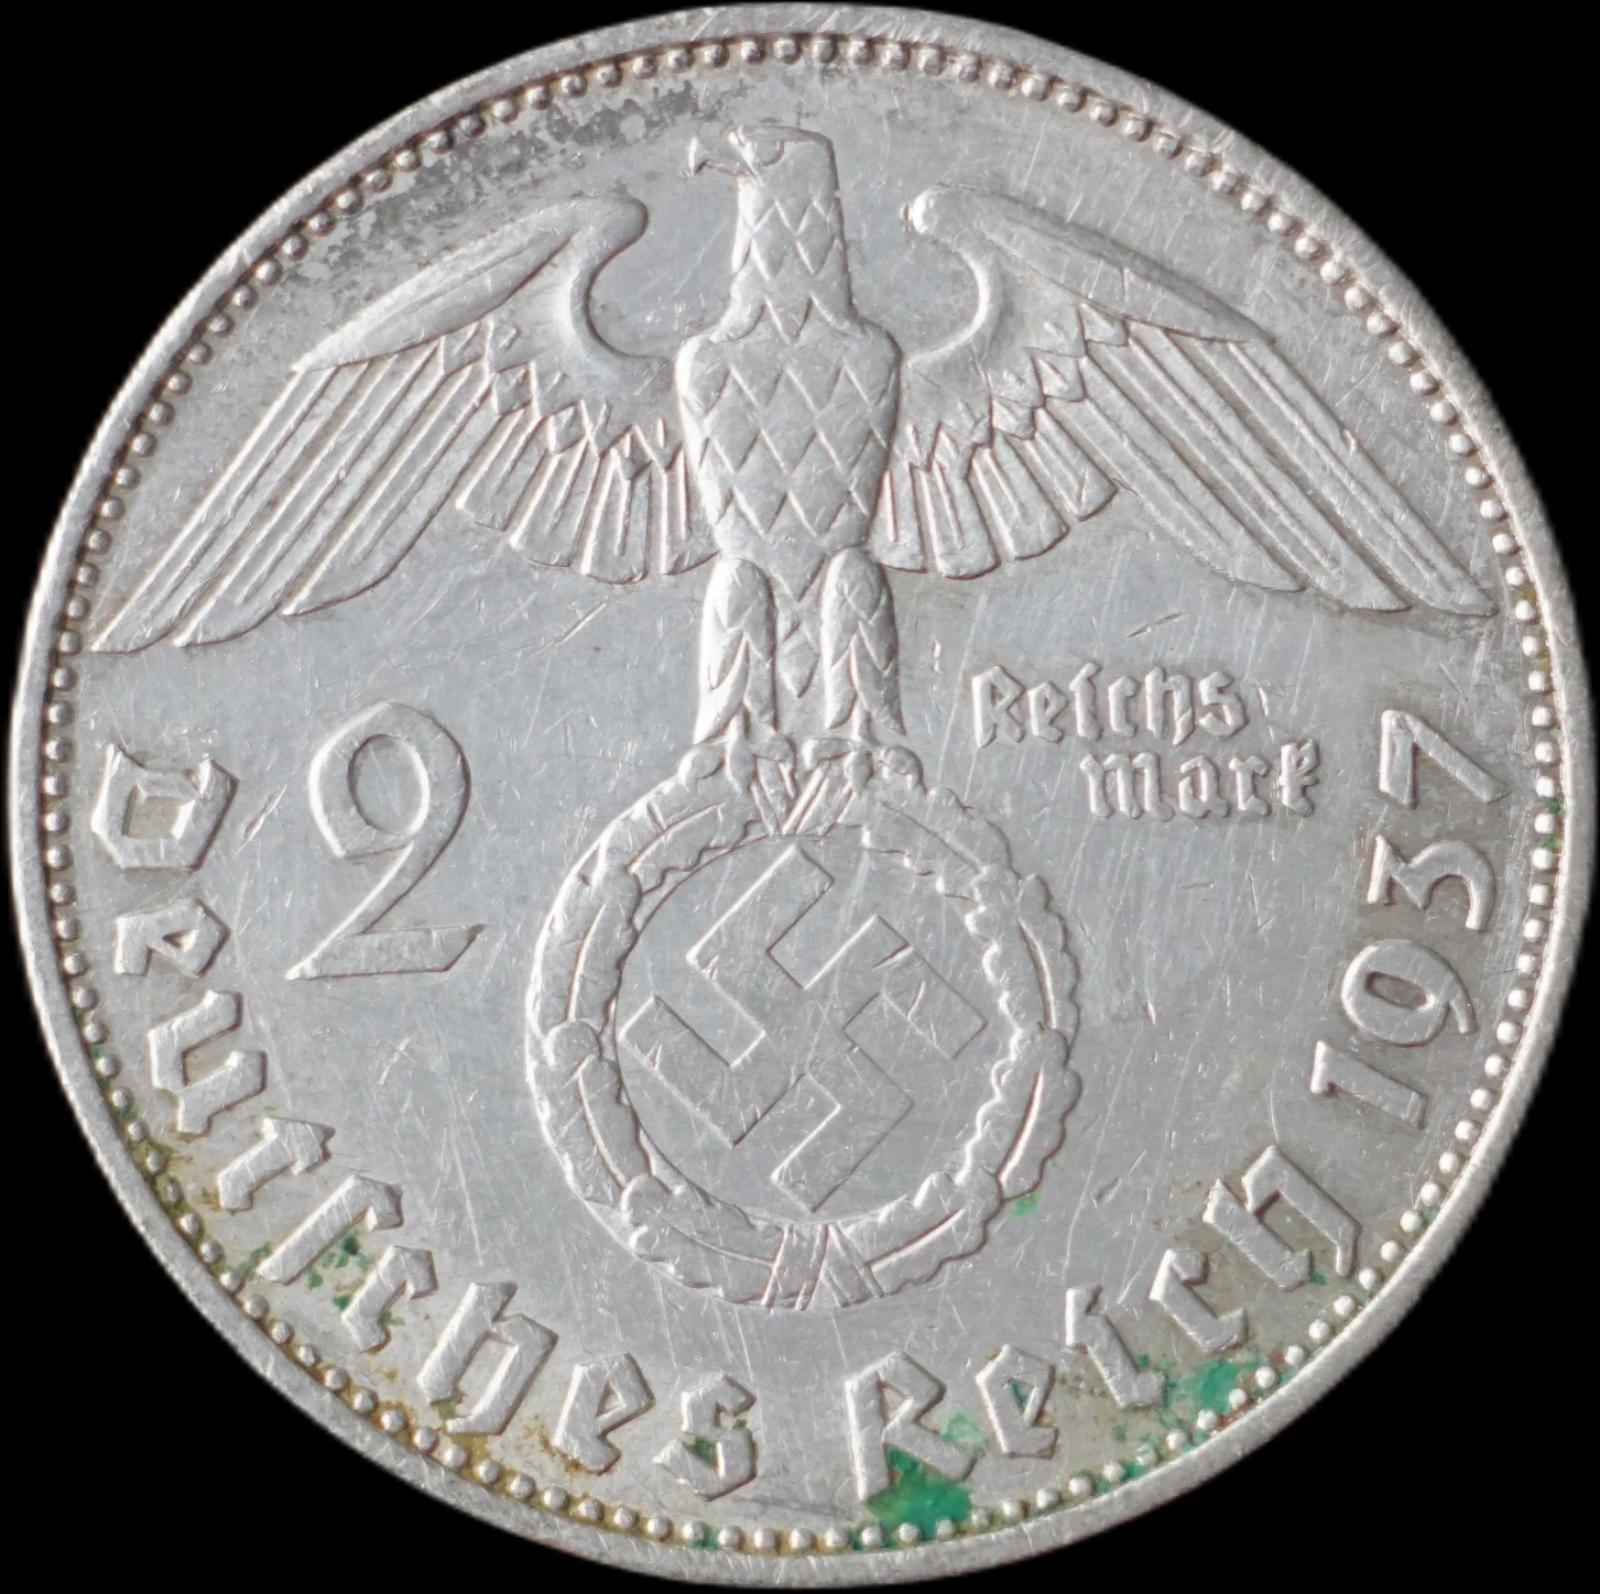 Nemecko - 2 Marka 1937 E Hindenburg - strieborná minca - Numizmatika